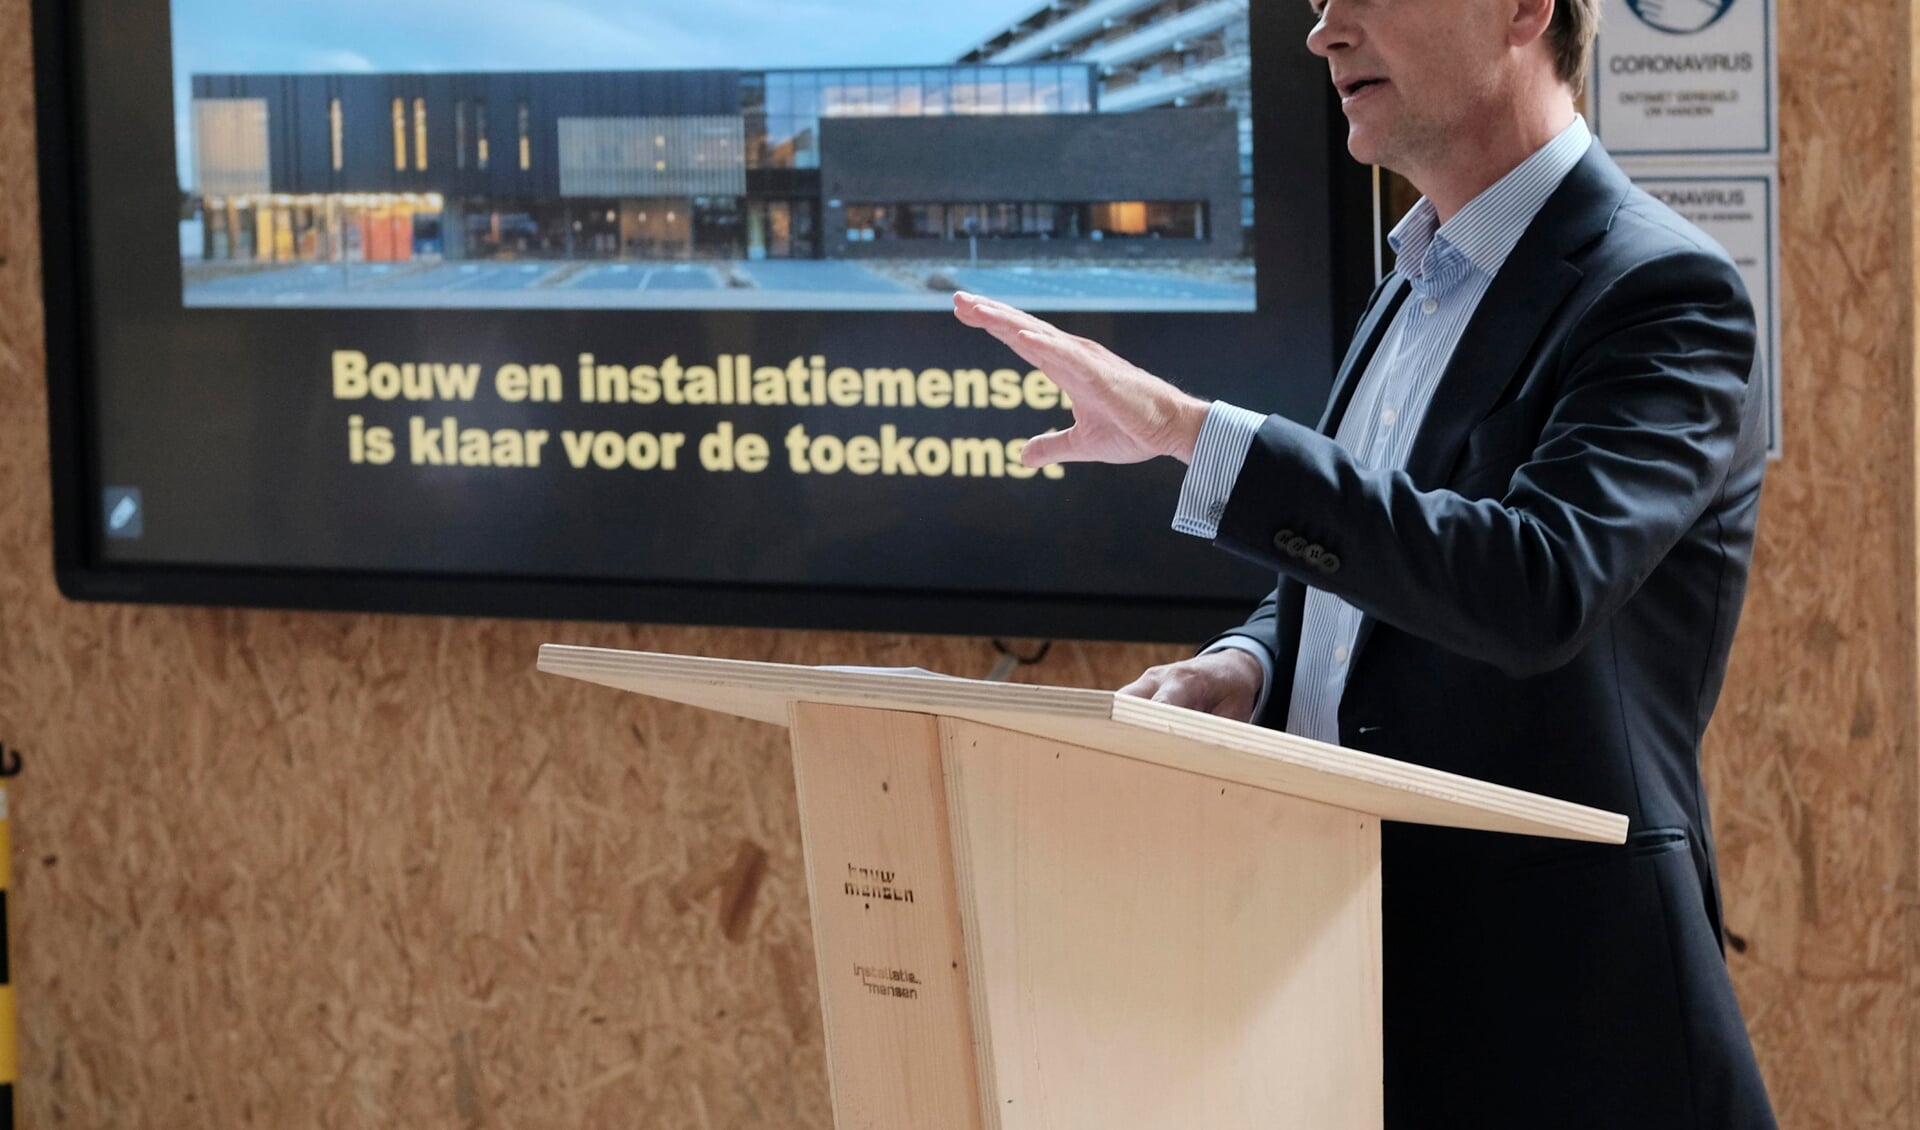 Algemeen directeur Koninklijke Bouwend Nederland, Fries Heinis, spreekt openingswens uit in het nieuwe pand van Bouw- en Installatiemensen.